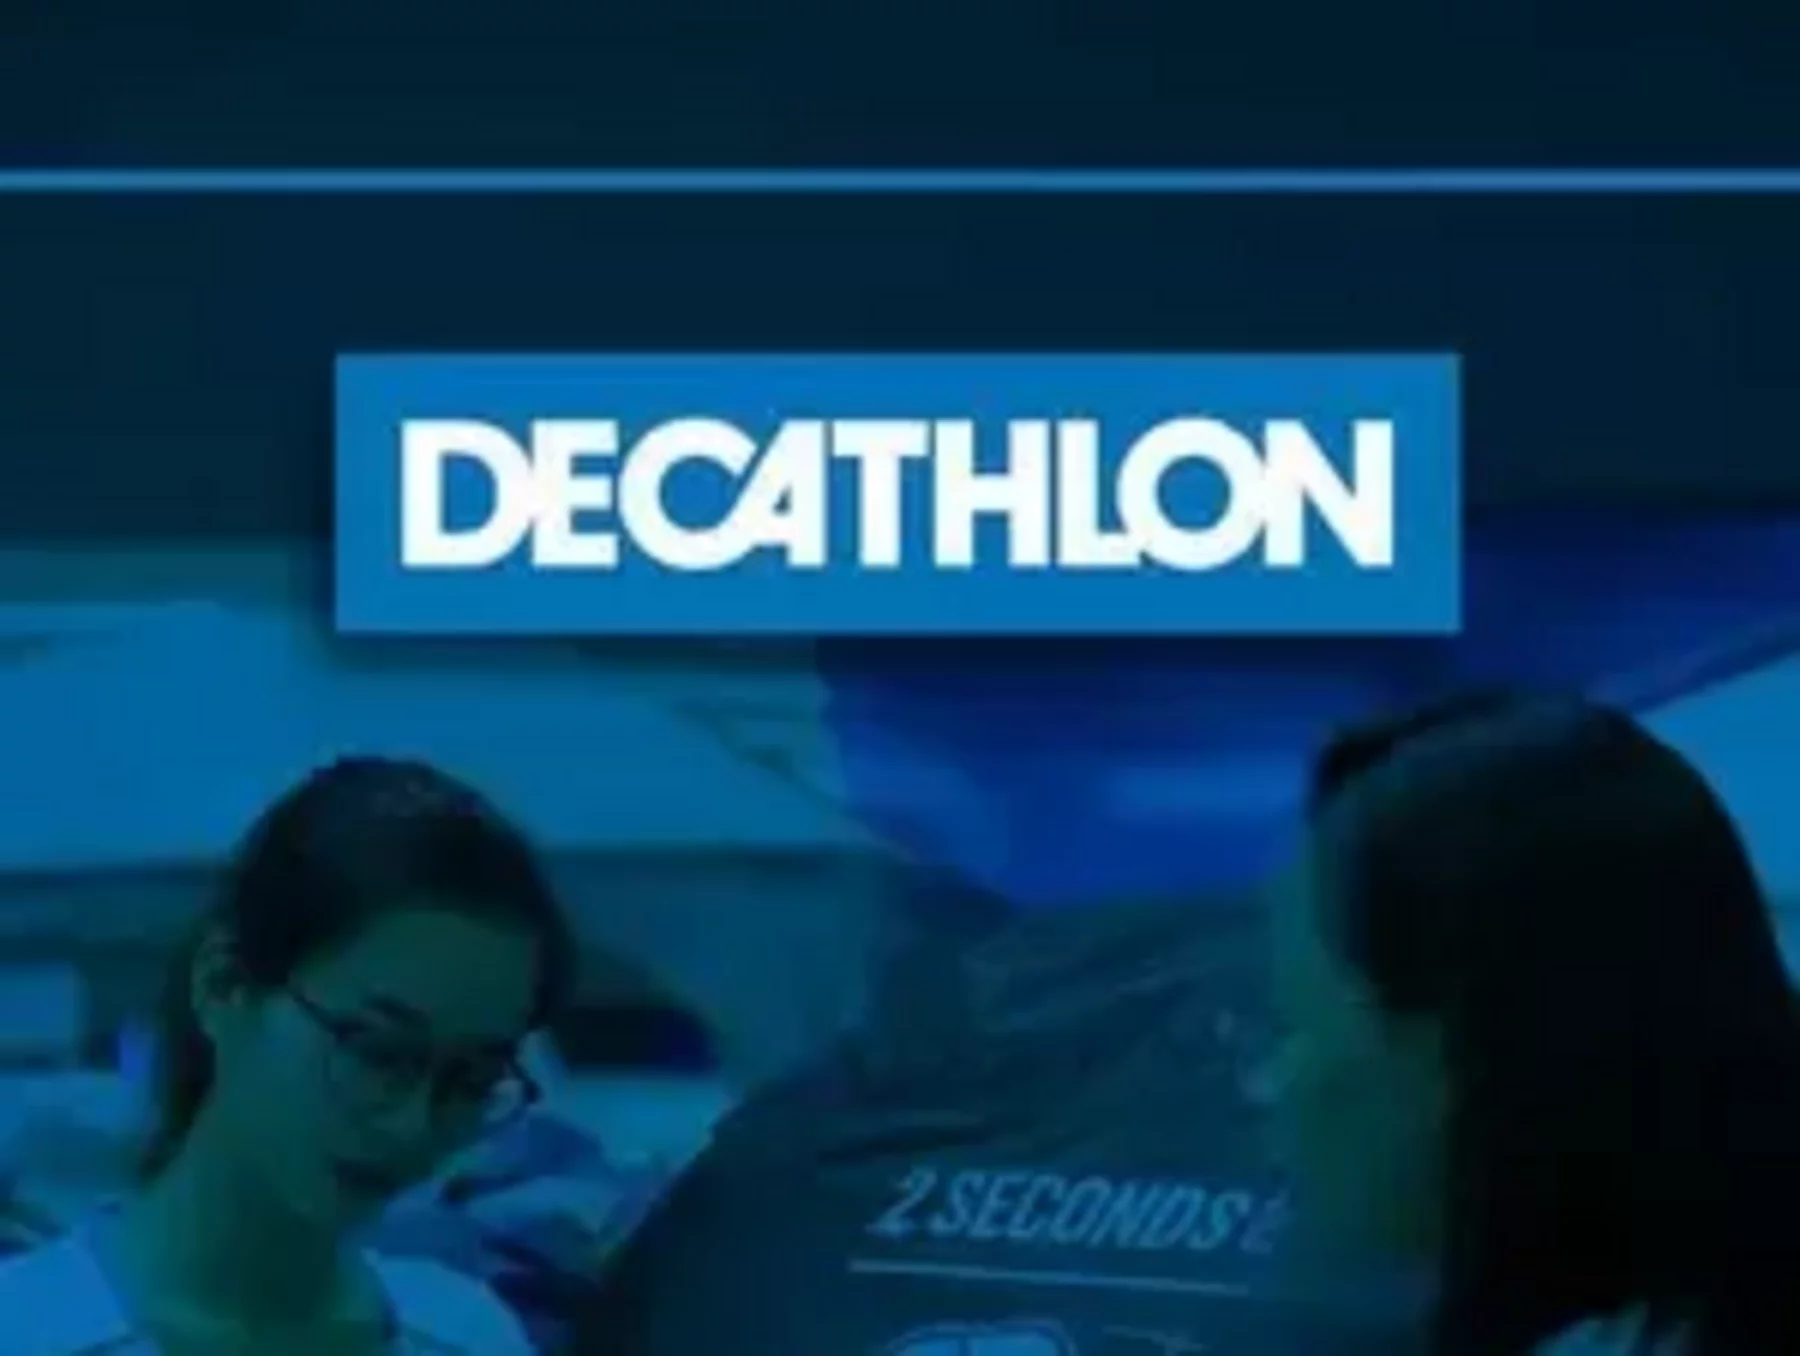 Decathlon lança programa de aceleração de carreira - STG News